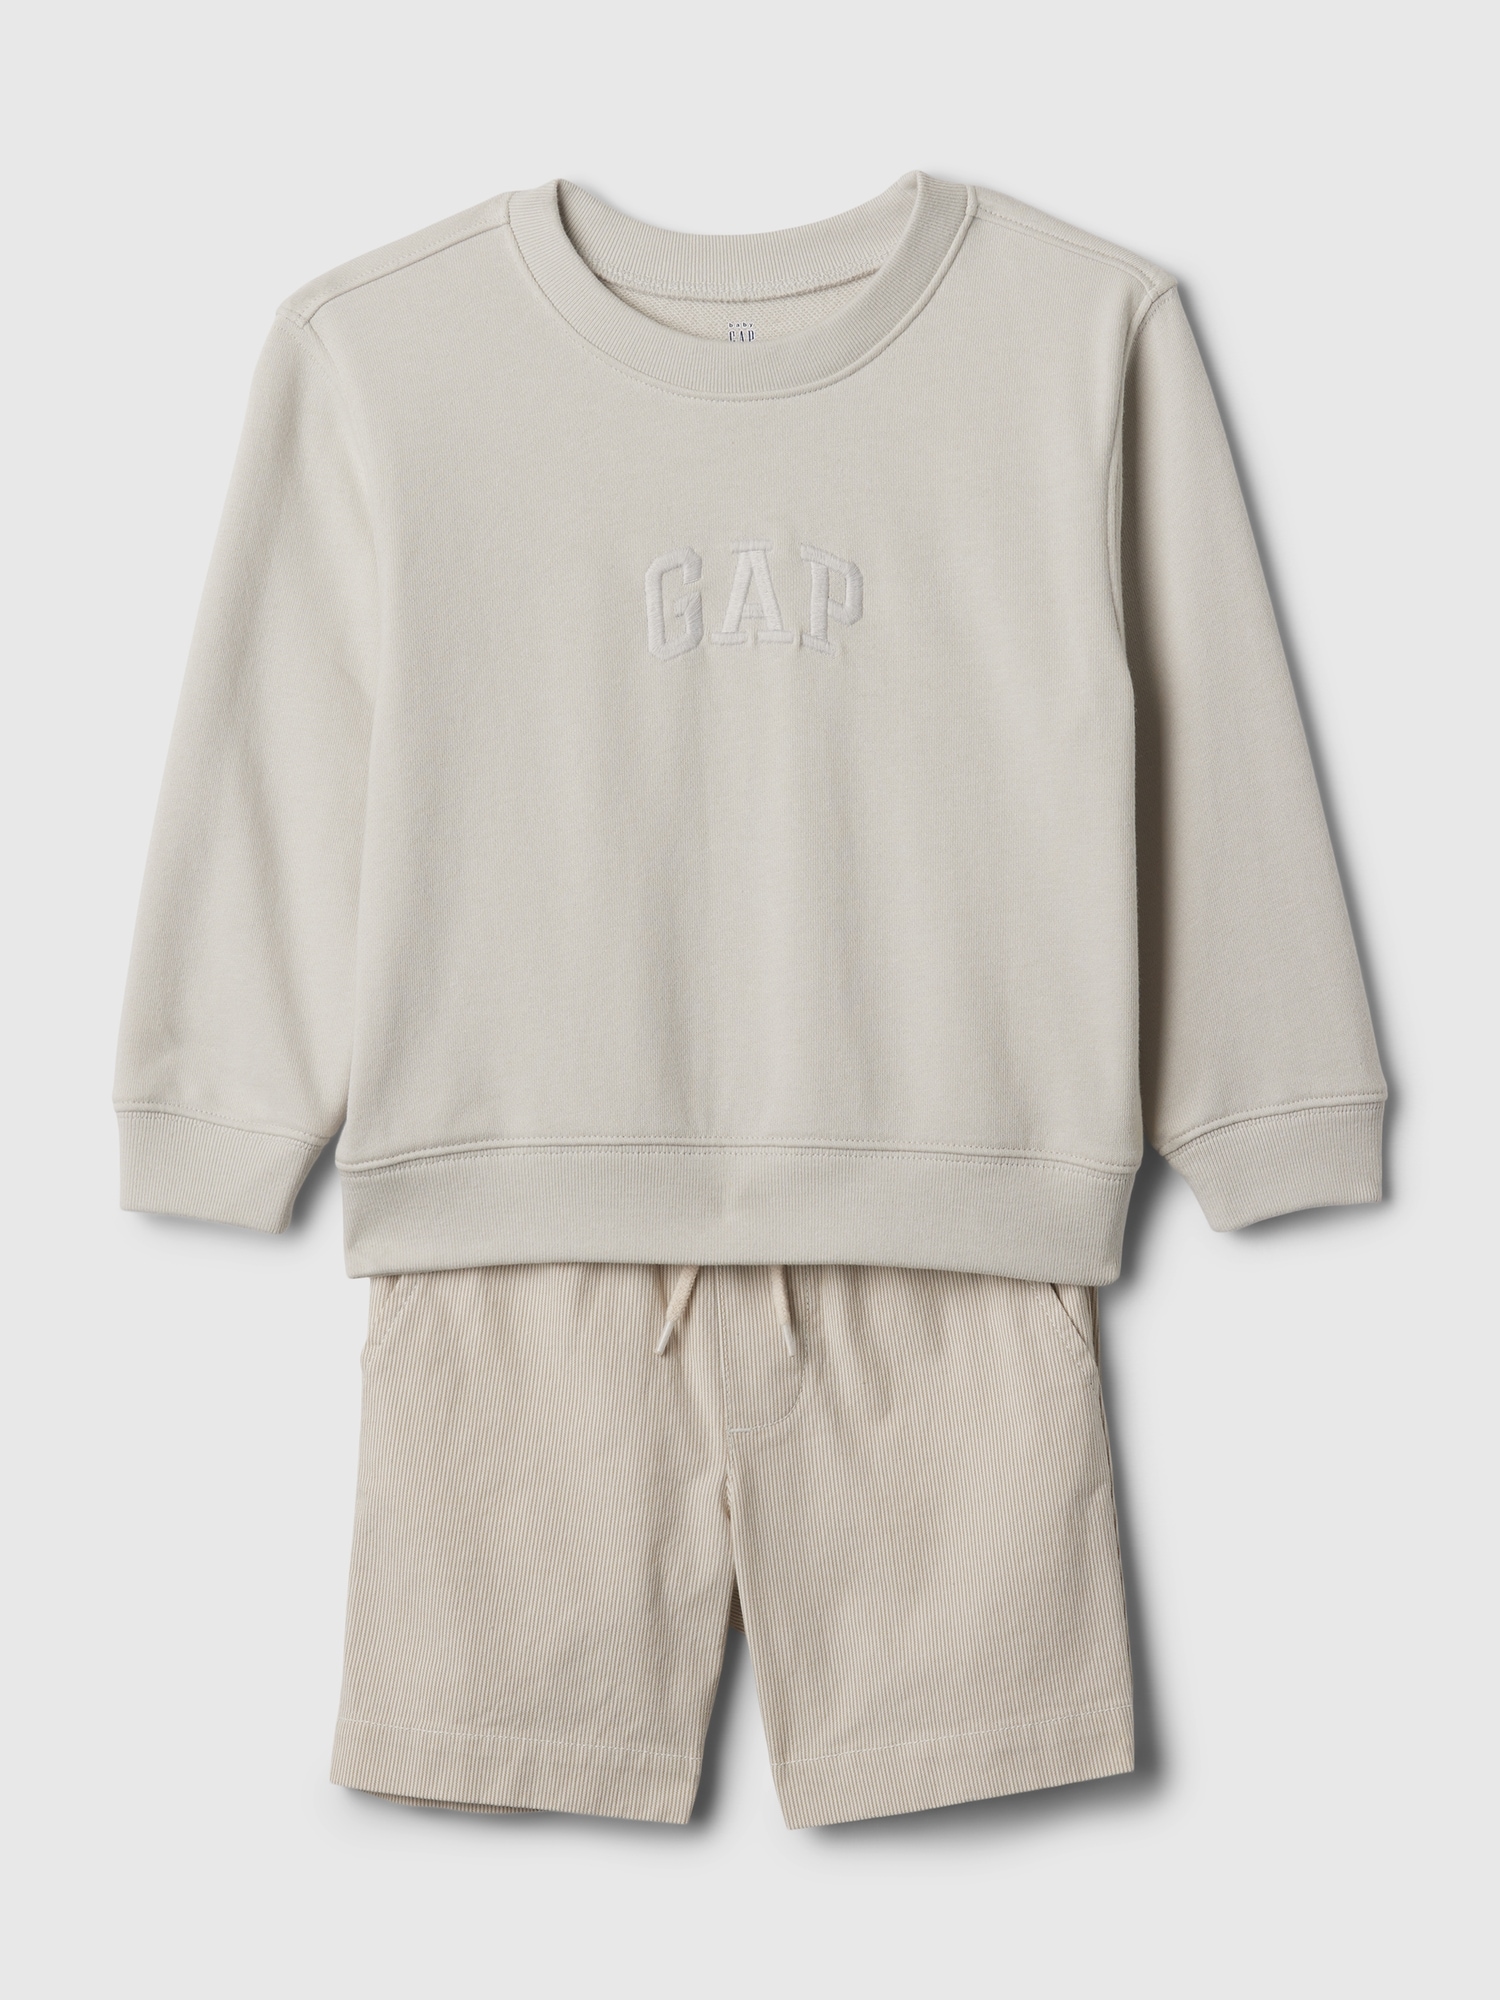 Gap Baby Two-piece Sweatshirt Set In Regular Grey